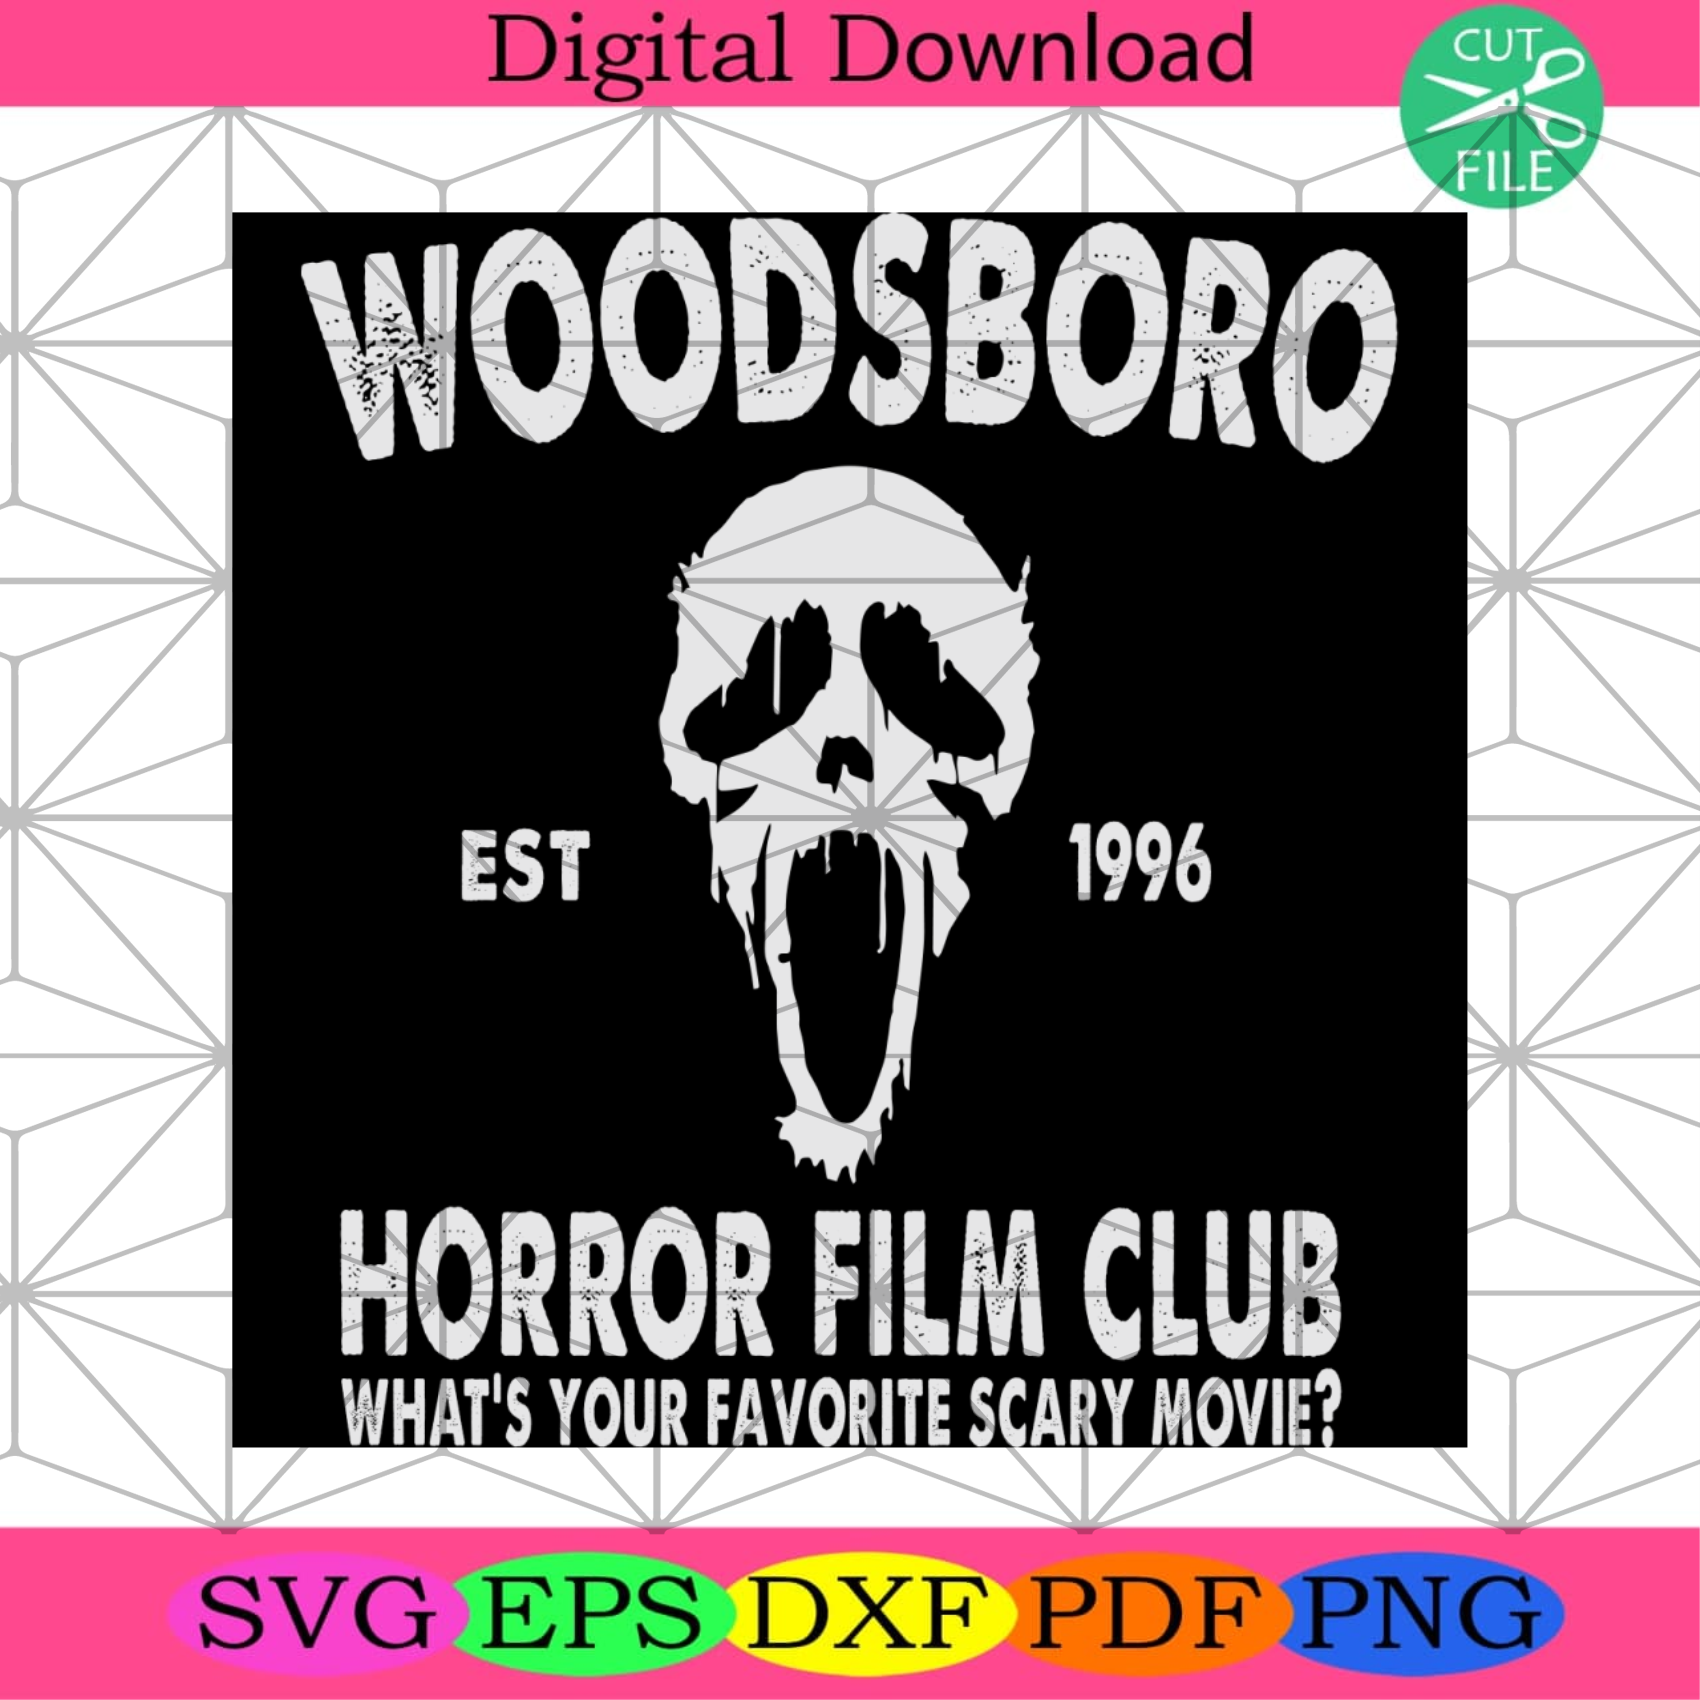 Woodsboro Horrors Film